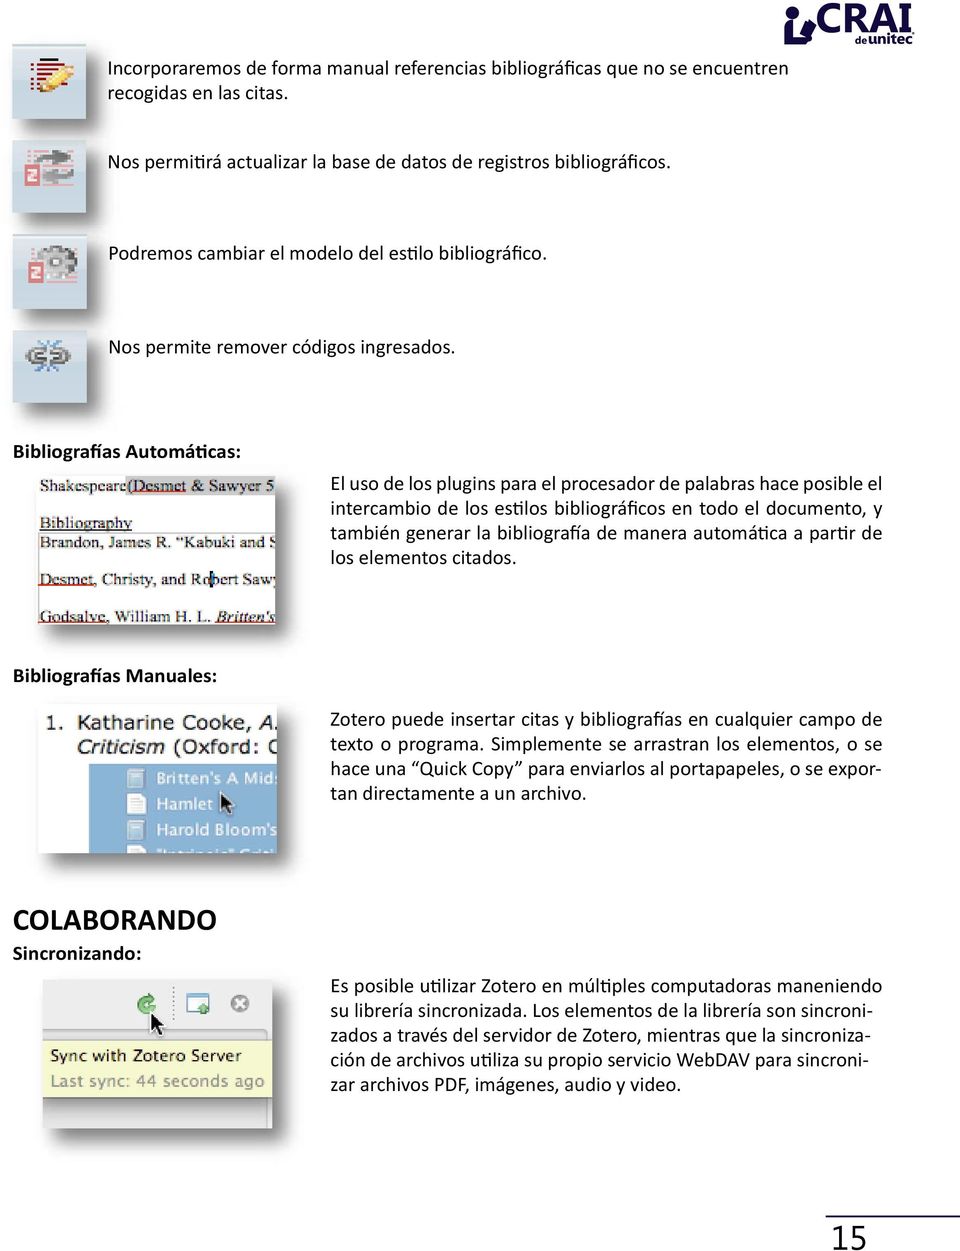 Bibliografías Automáticas: El uso de los plugins para el procesador de palabras hace posible el intercambio de los estilos bibliográficos en todo el documento, y también generar la bibliografía de